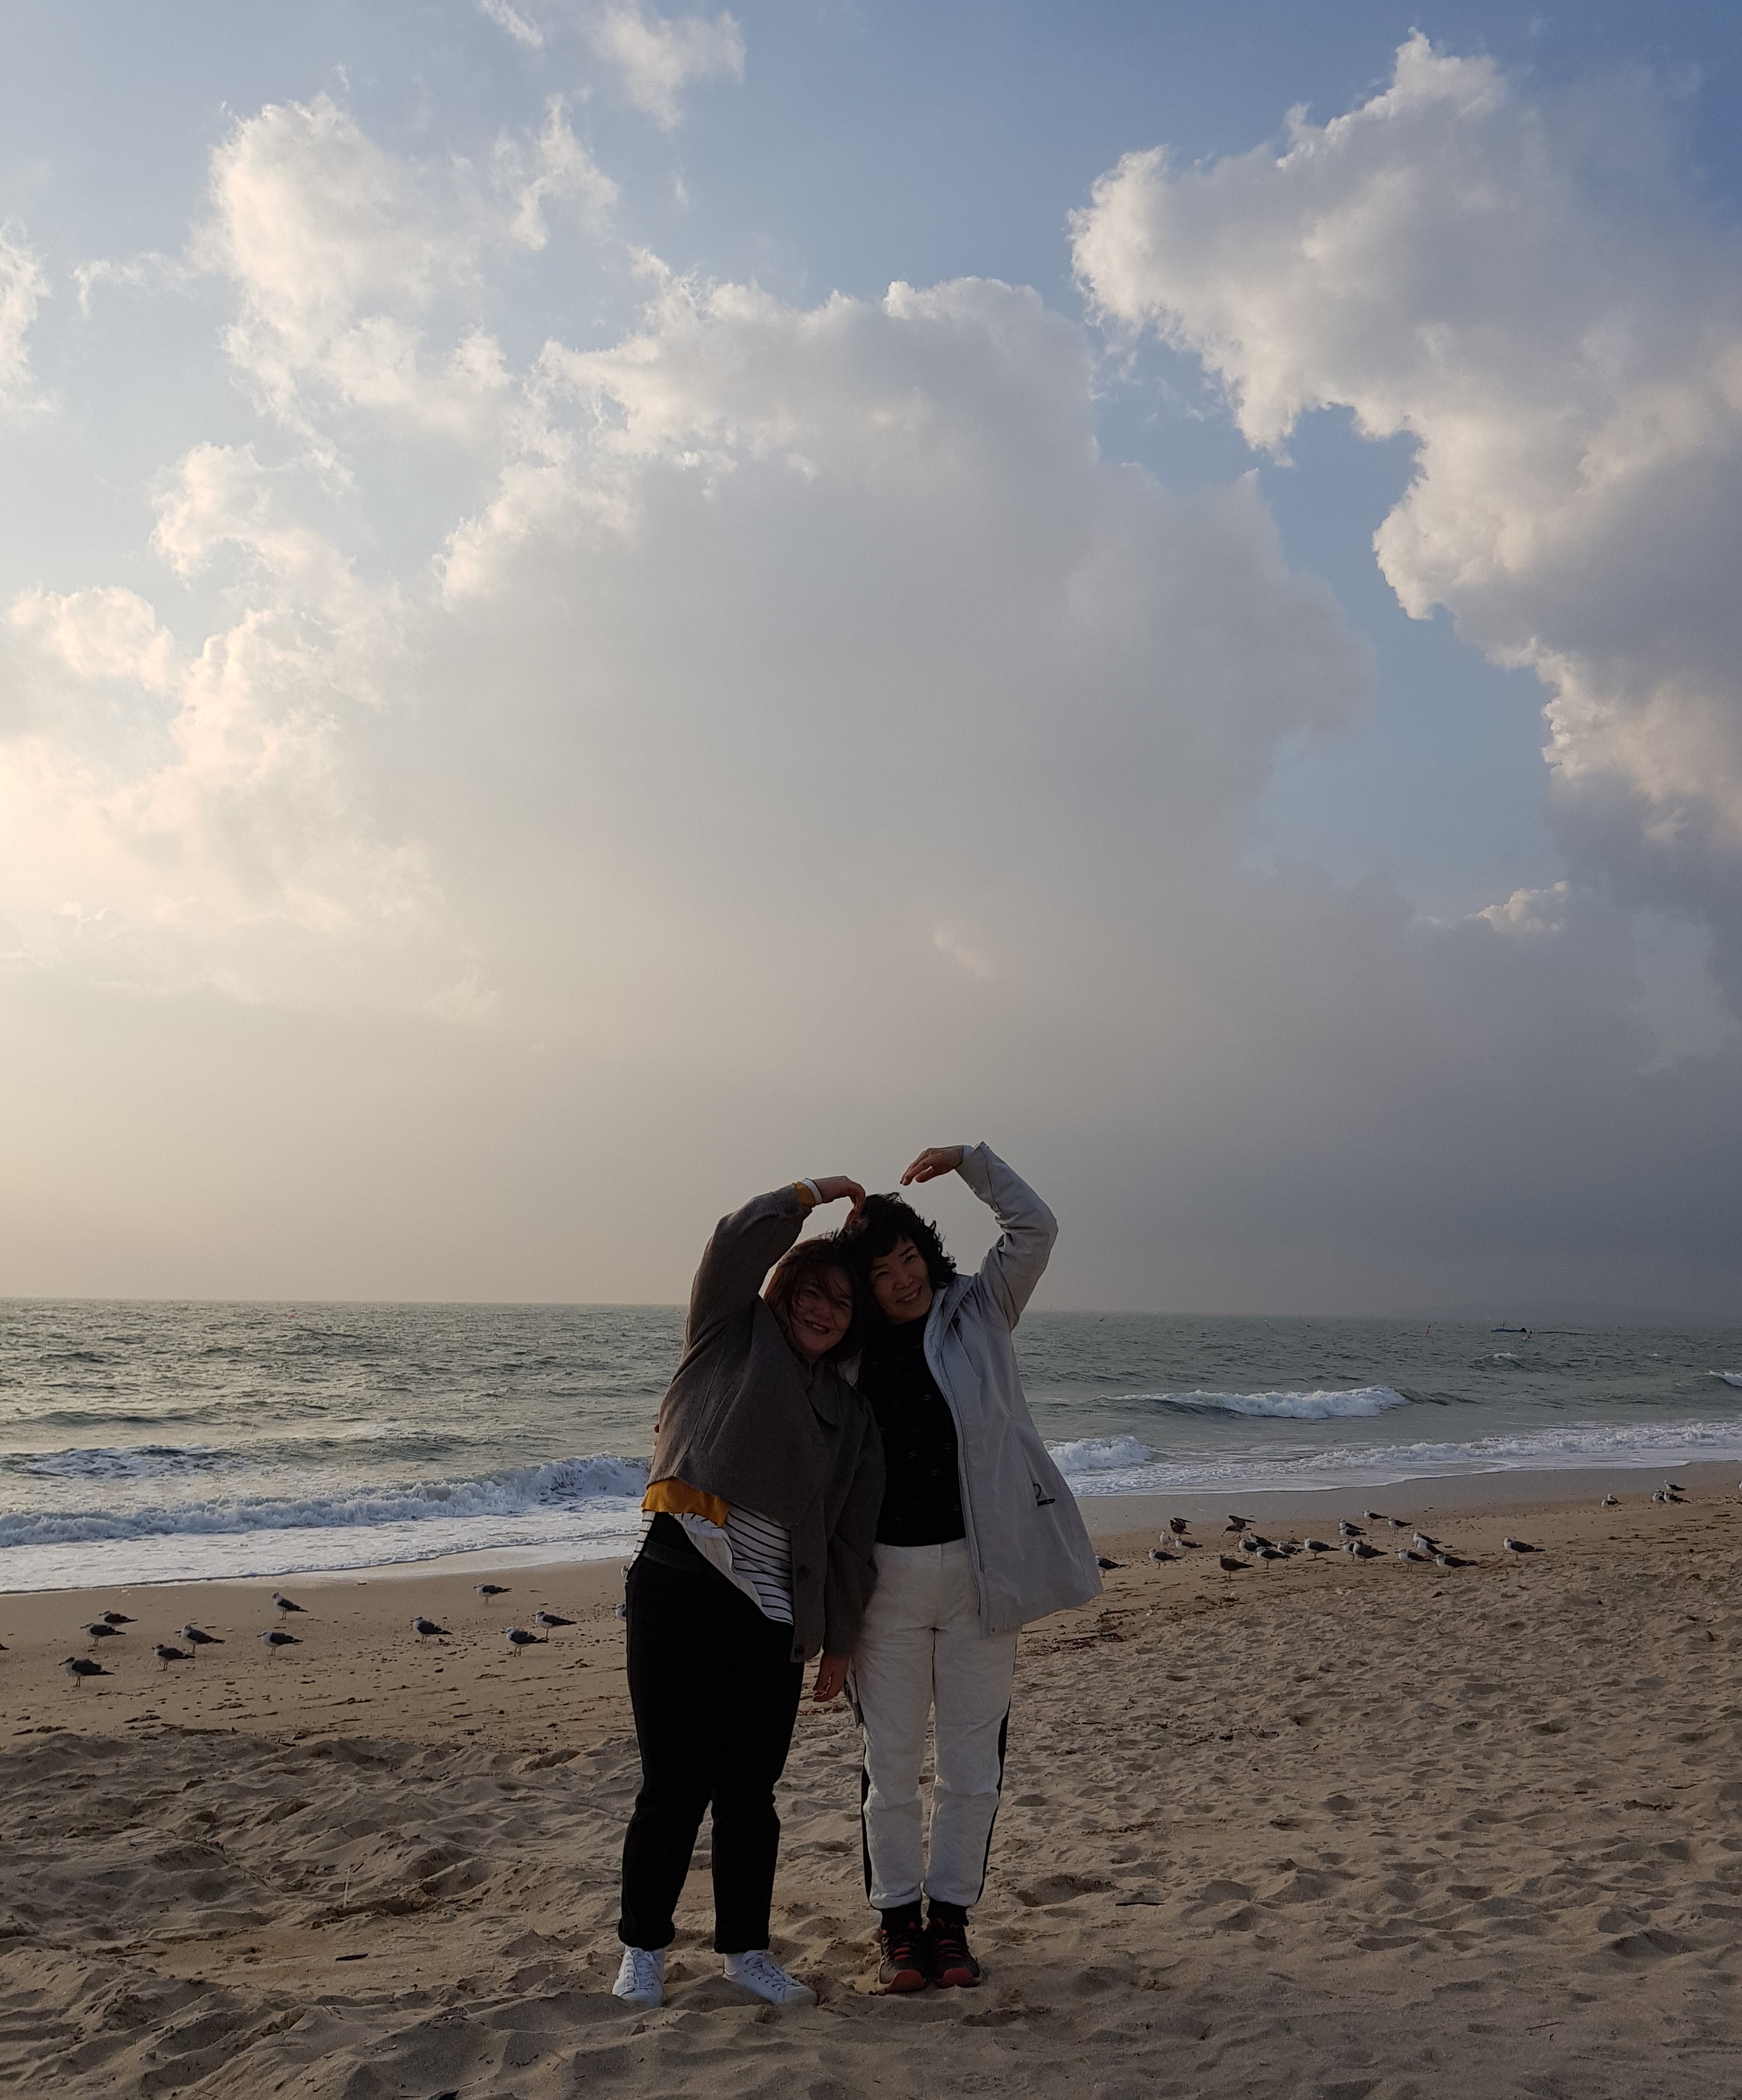 자유시간에는 대천해수욕장 해변가를 걸었구요. 다정한 이성순 전담인력, 김보영 지원사님